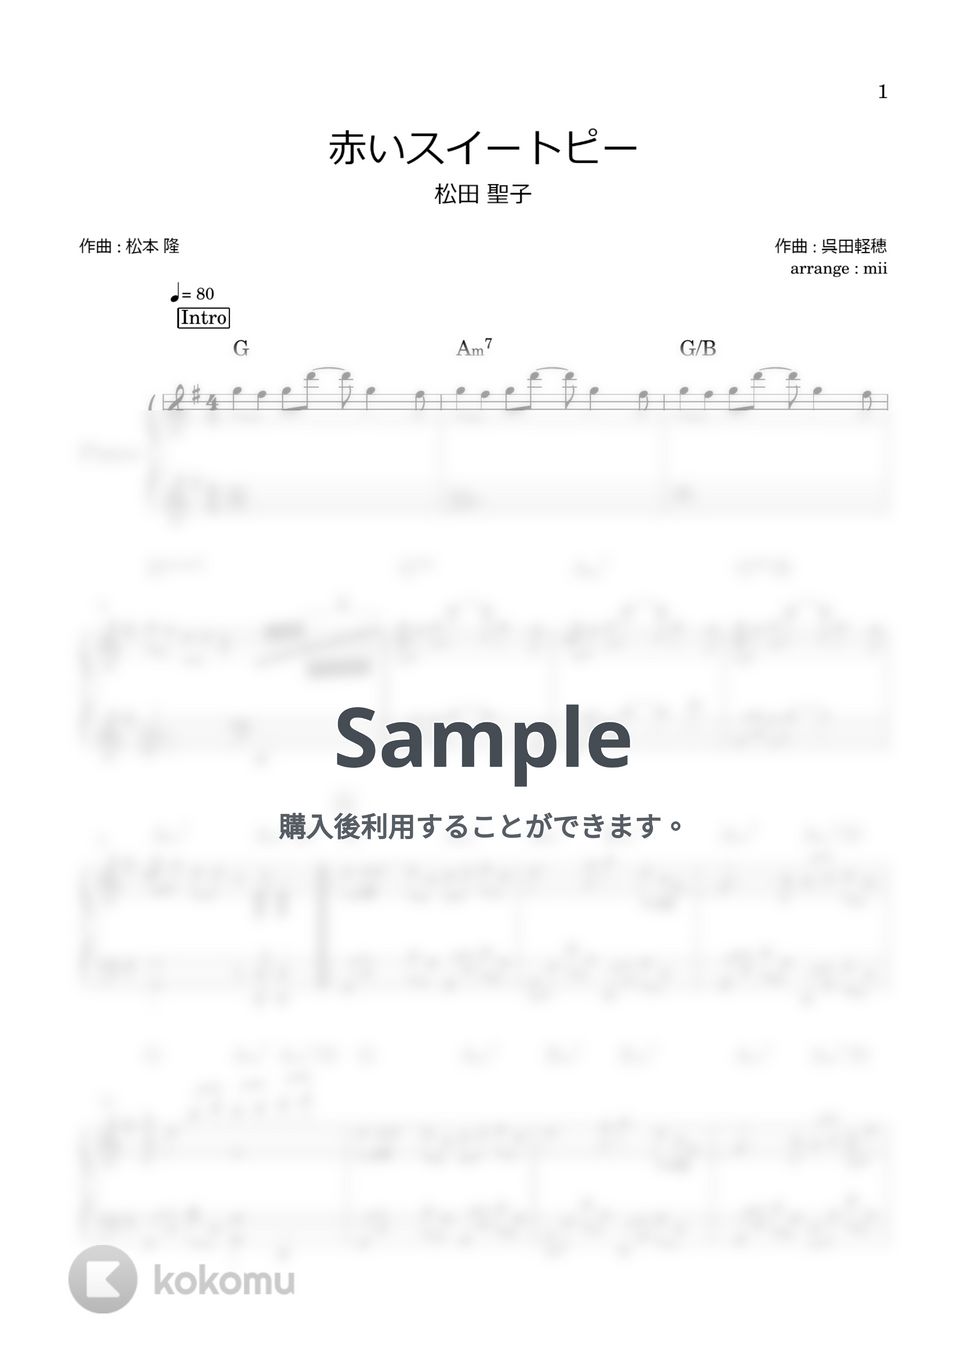 松田聖子 - 赤いスイートピー by miiの楽譜棚